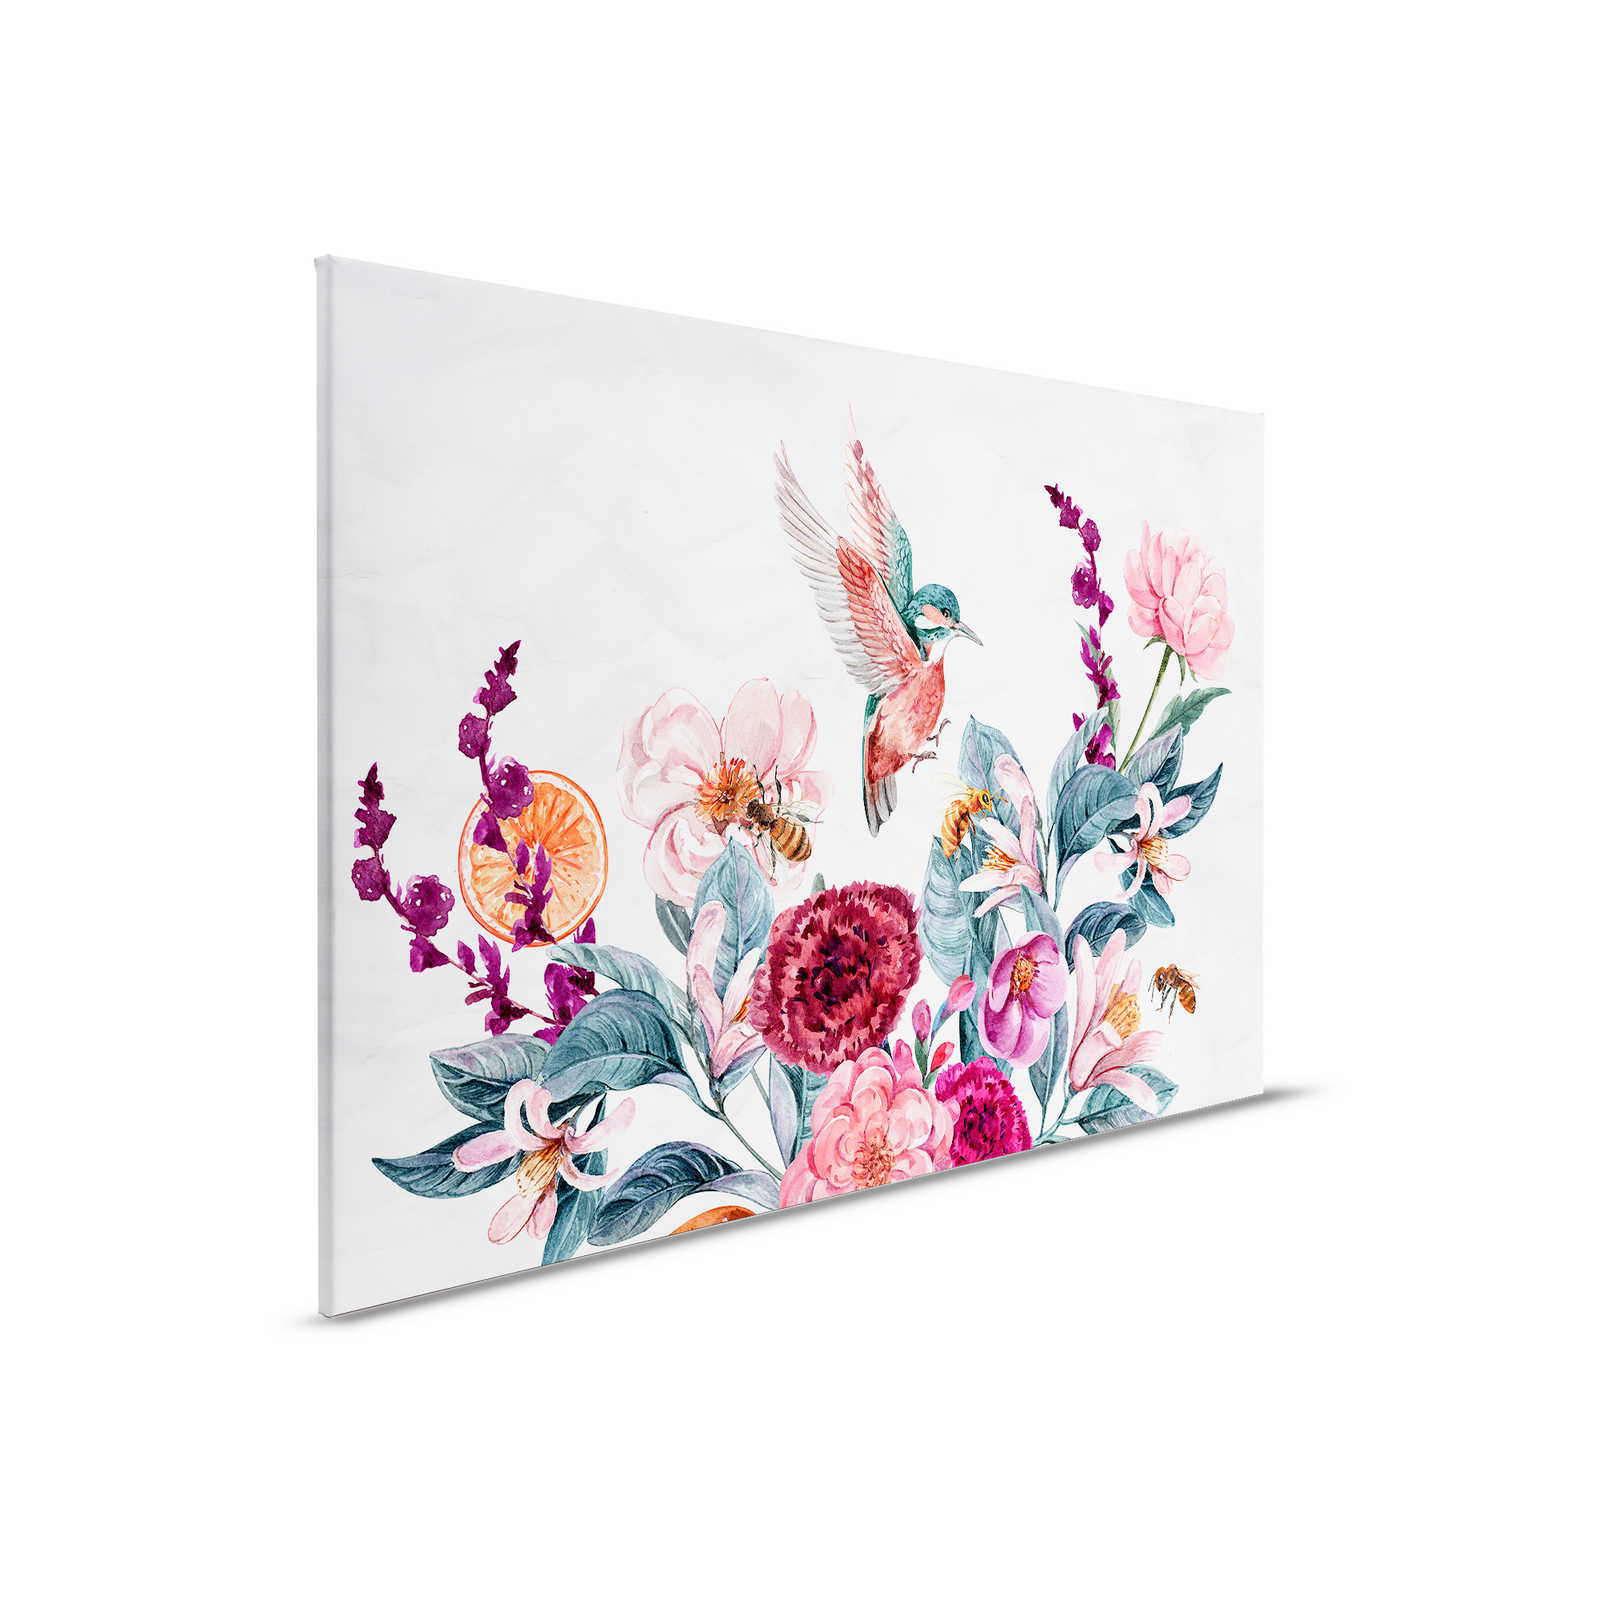             Leinwandbild Blumen & Vögel auf 3D Hintergrund – 0,90 m x 0,60 m
        